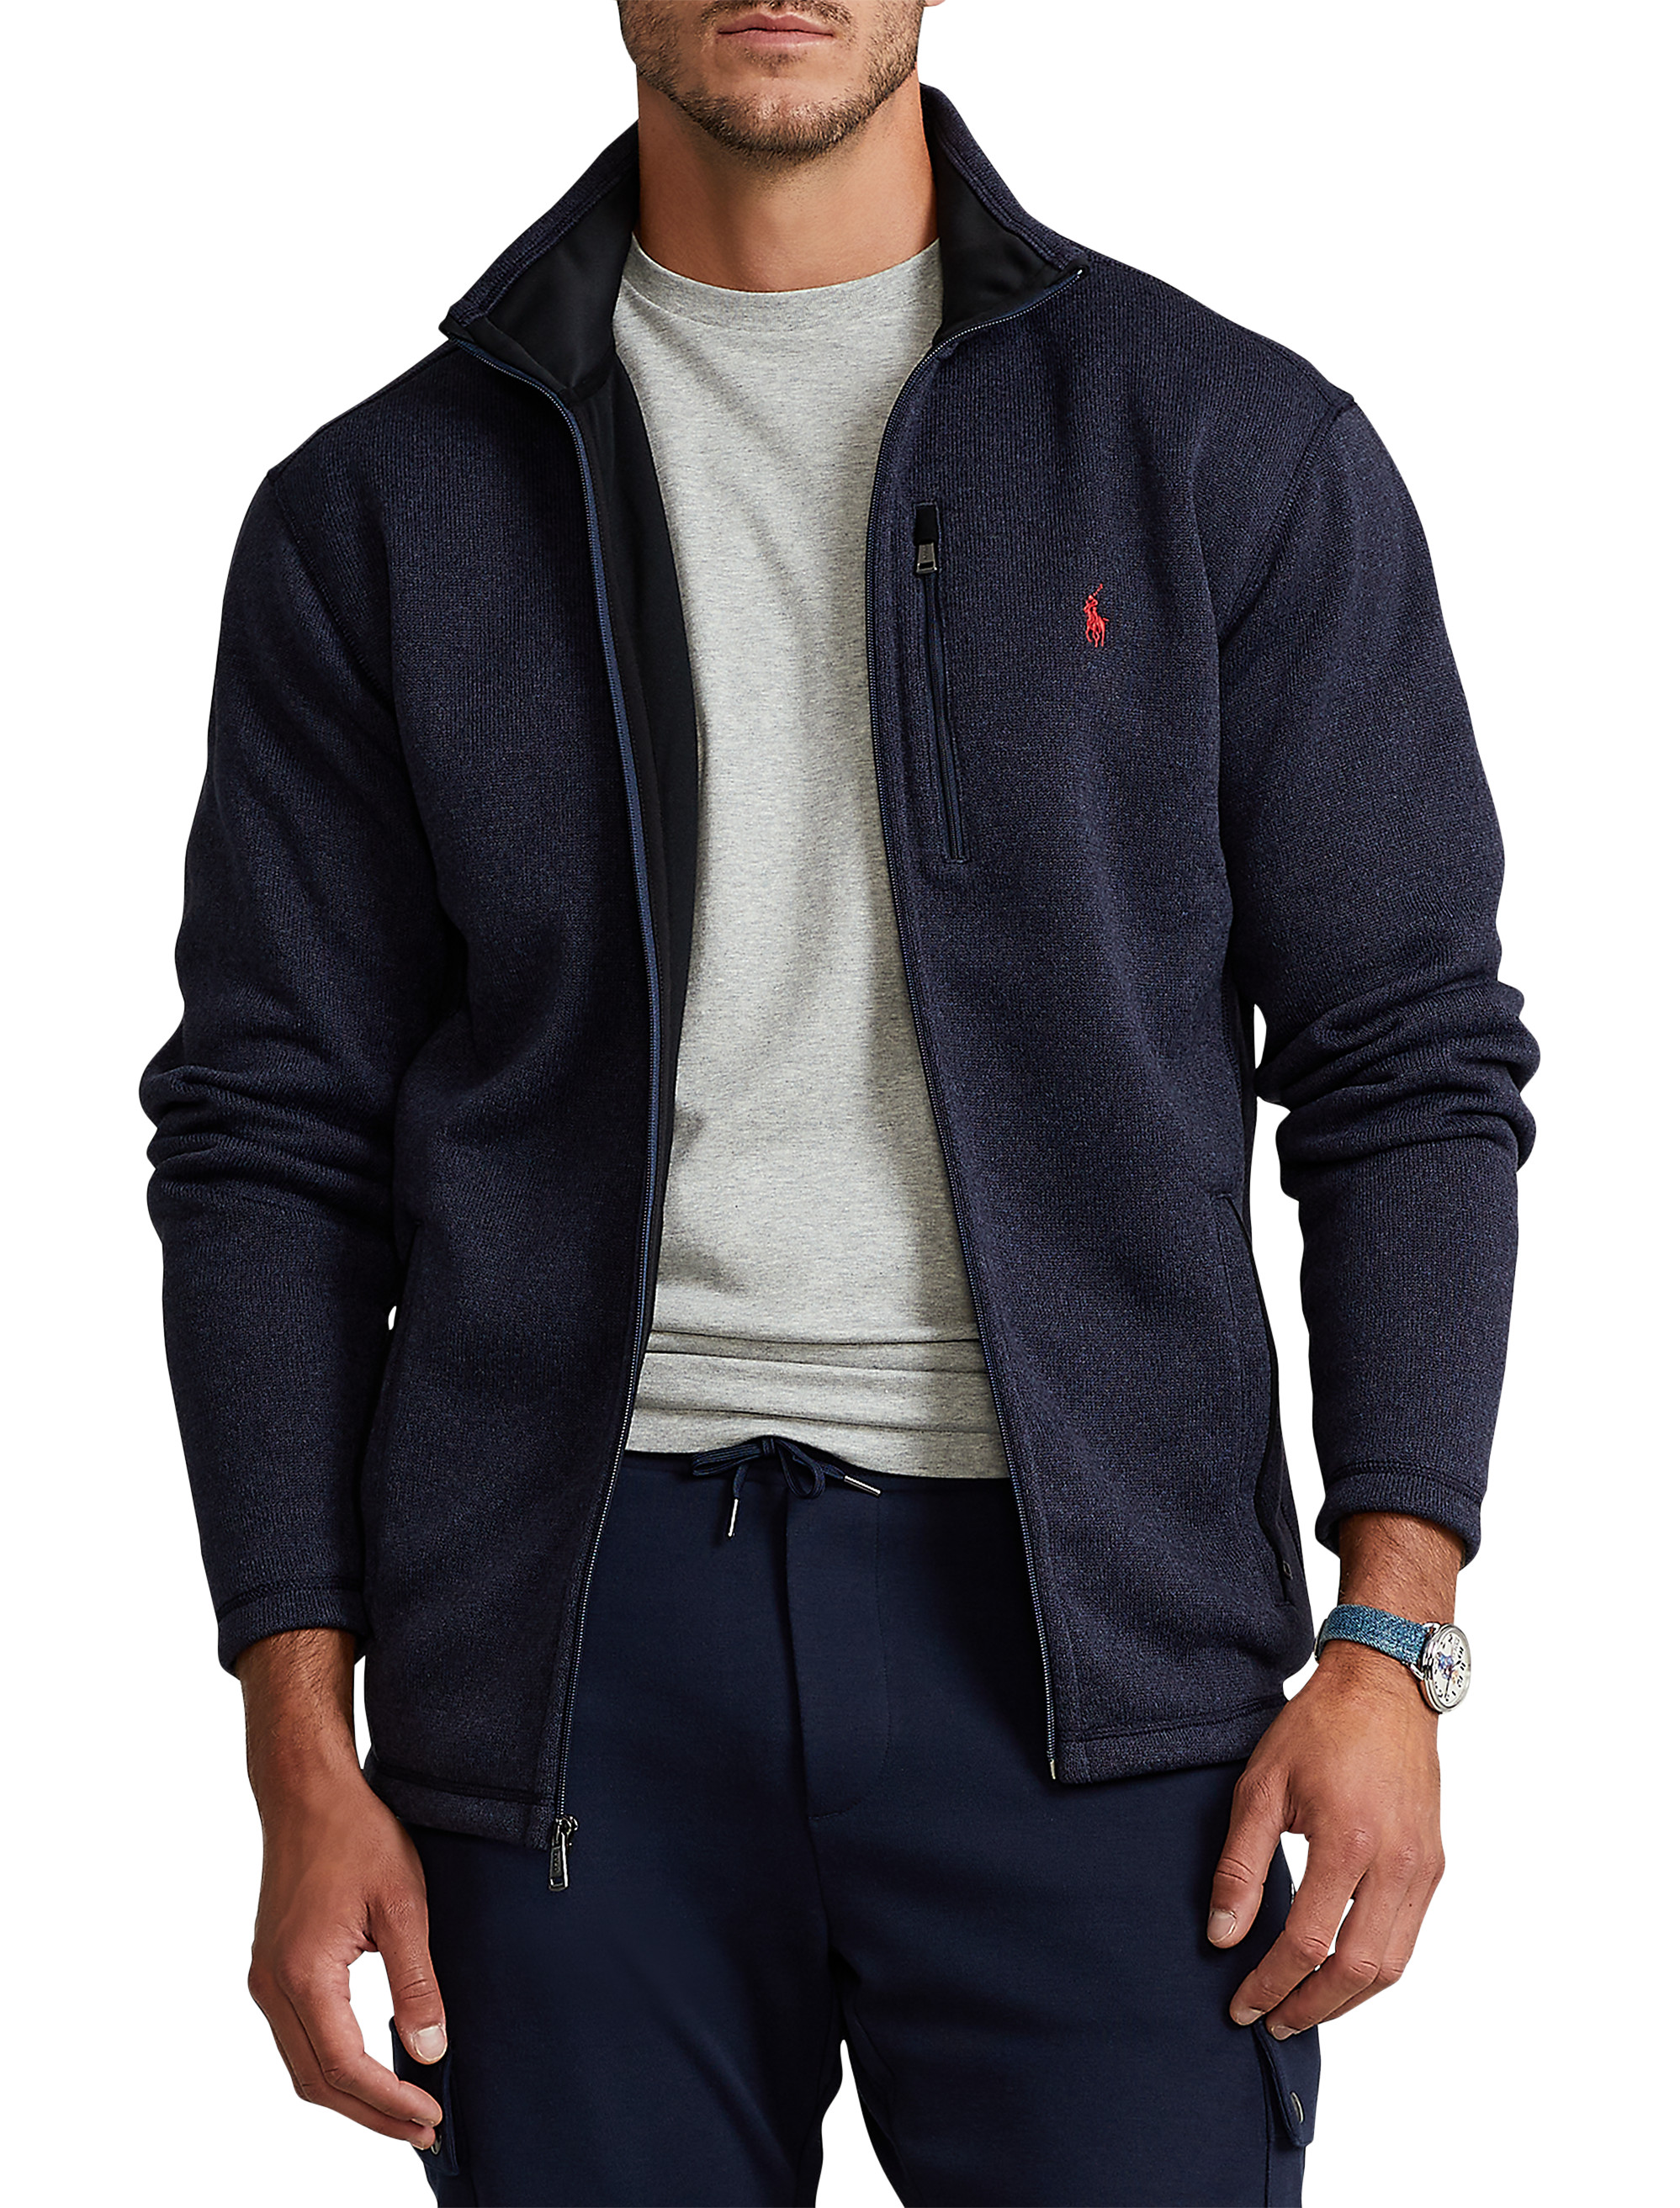 Big + Tall, Polo Ralph Lauren Sweater Fleece Jacket